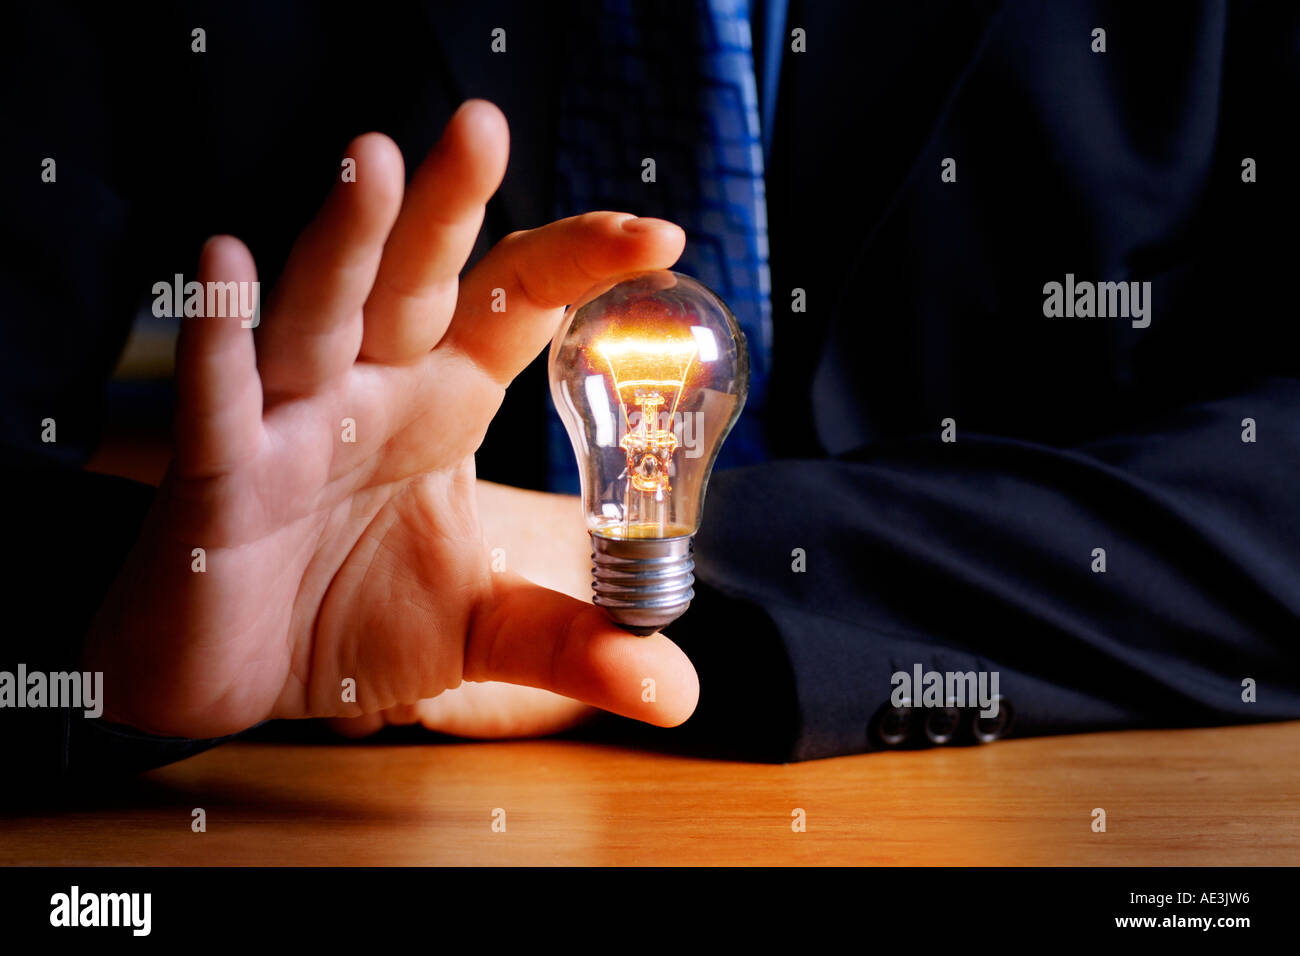 Homme tenant allumée la lampe électrique Photo Stock - Alamy